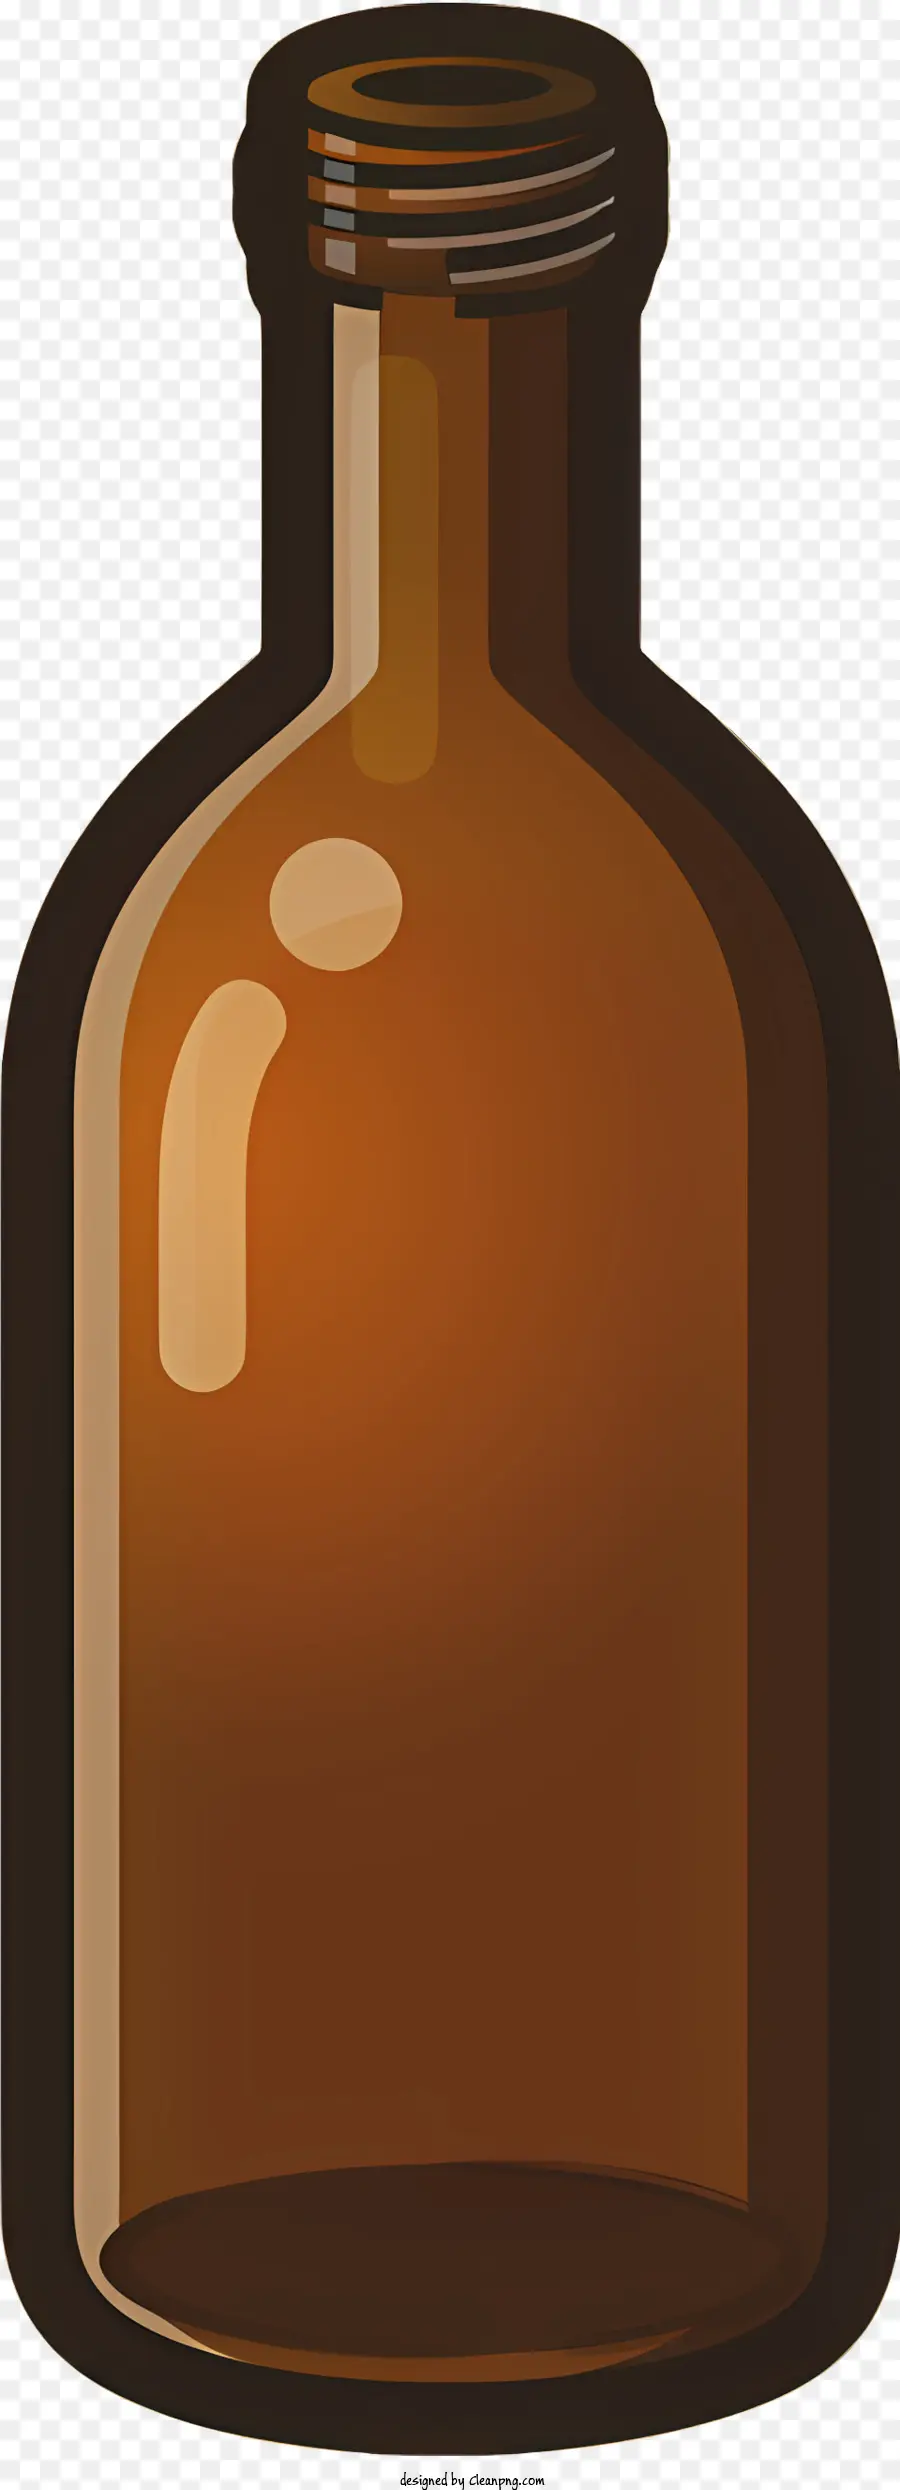 Biểu tượng chai thủy tinh màu nâu Clear Glass Kính trên cùng chai hình trụ cổ hẹp - Chai thủy tinh màu nâu trống với đỉnh rõ ràng